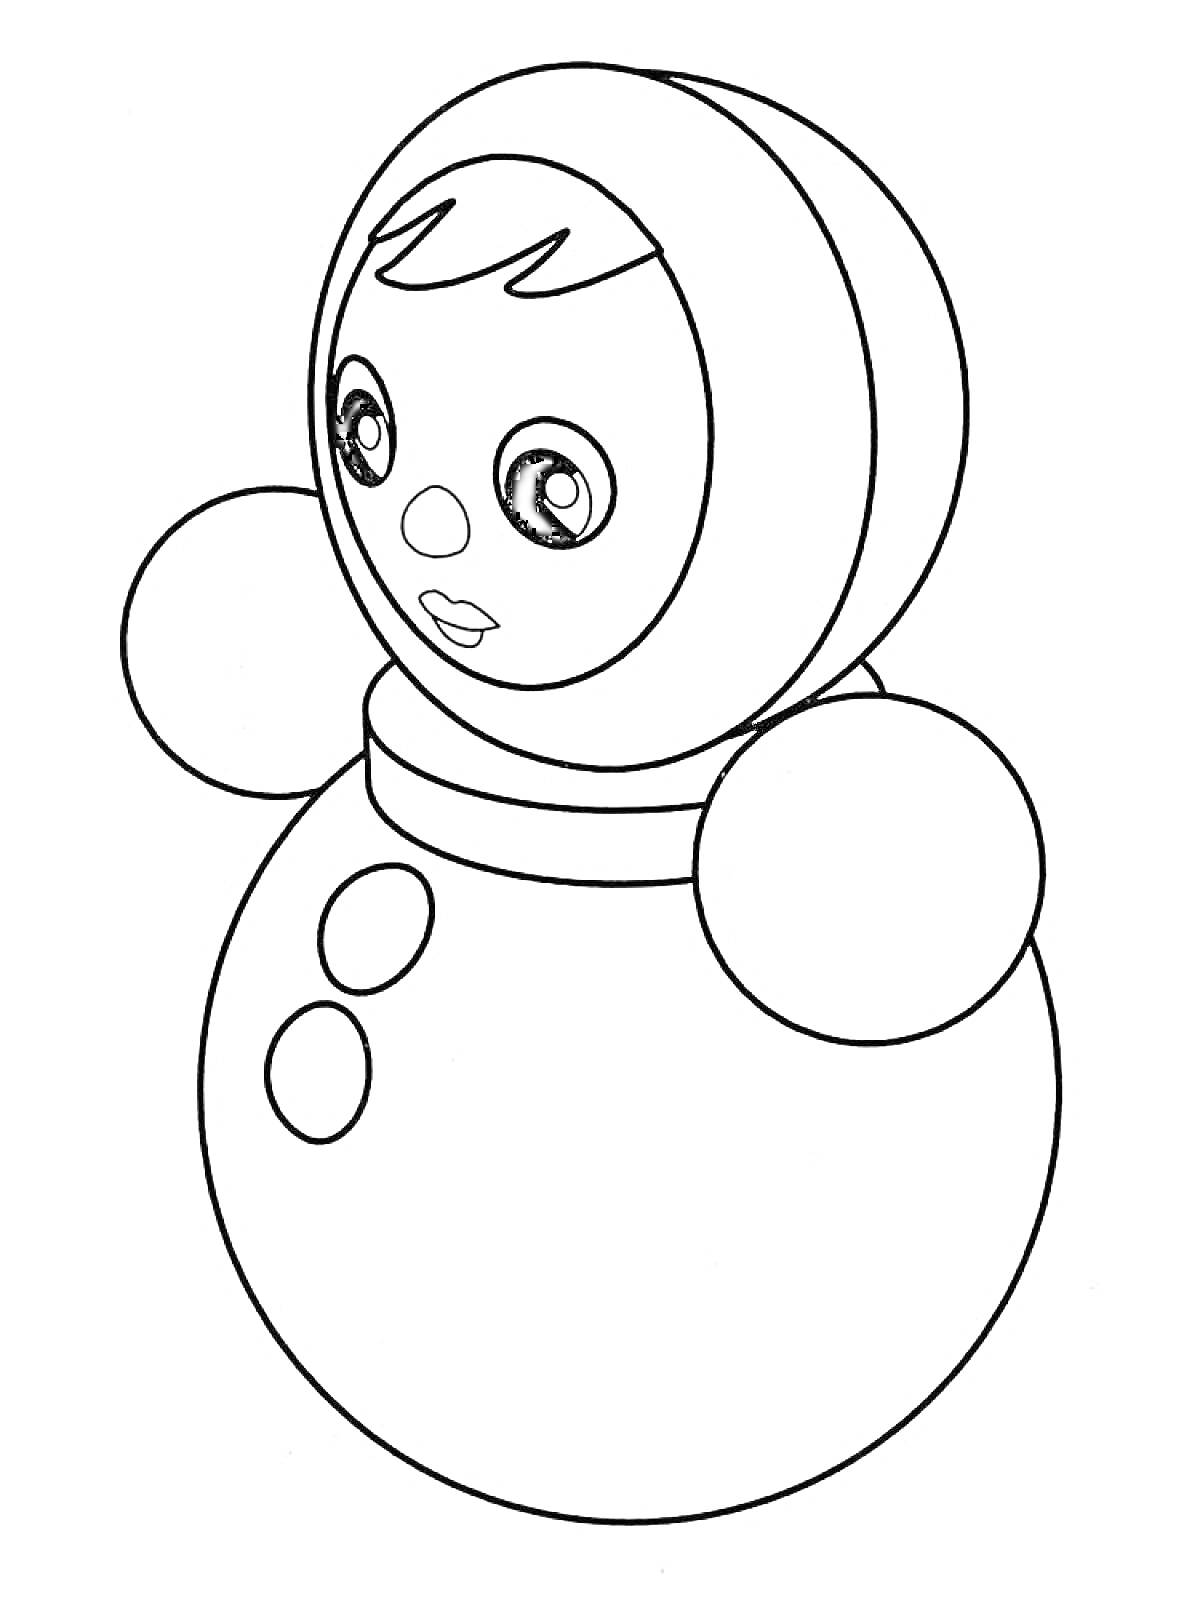 Раскраска Неваляшка с округлым телом, большими глазами и круглым носом